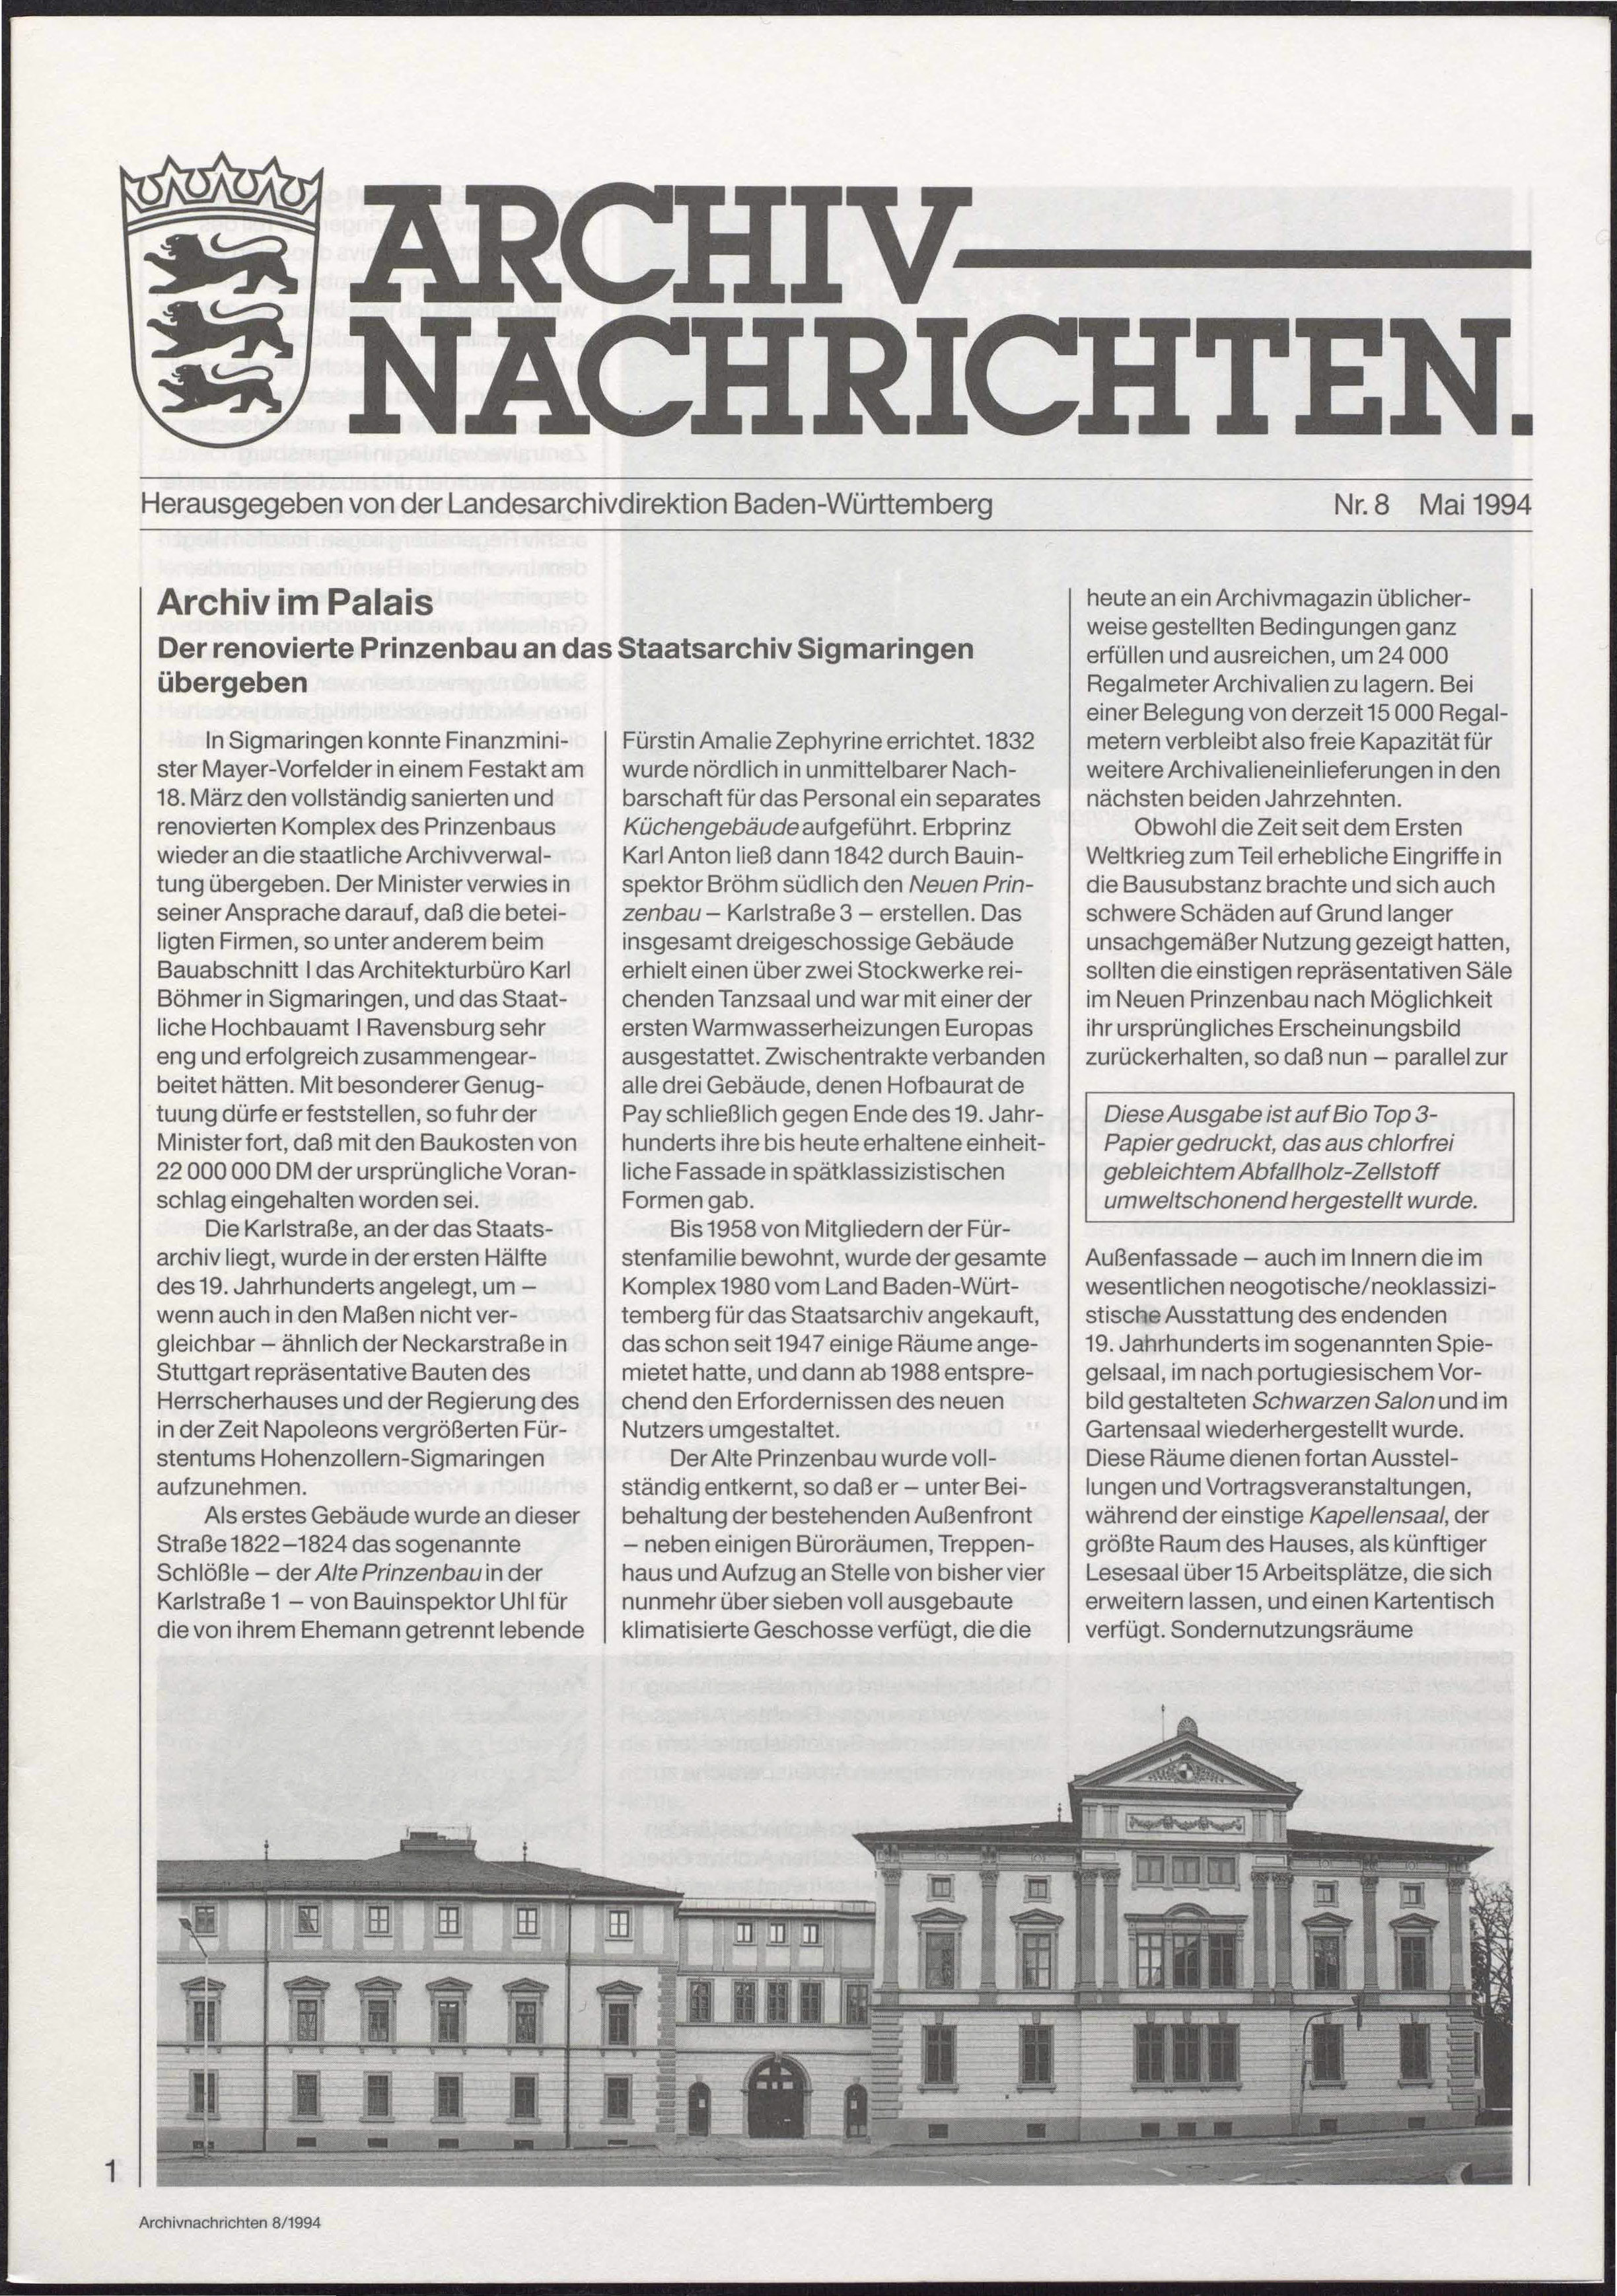                     Ansehen Nr. 8 (1994): Archivnachrichten
                